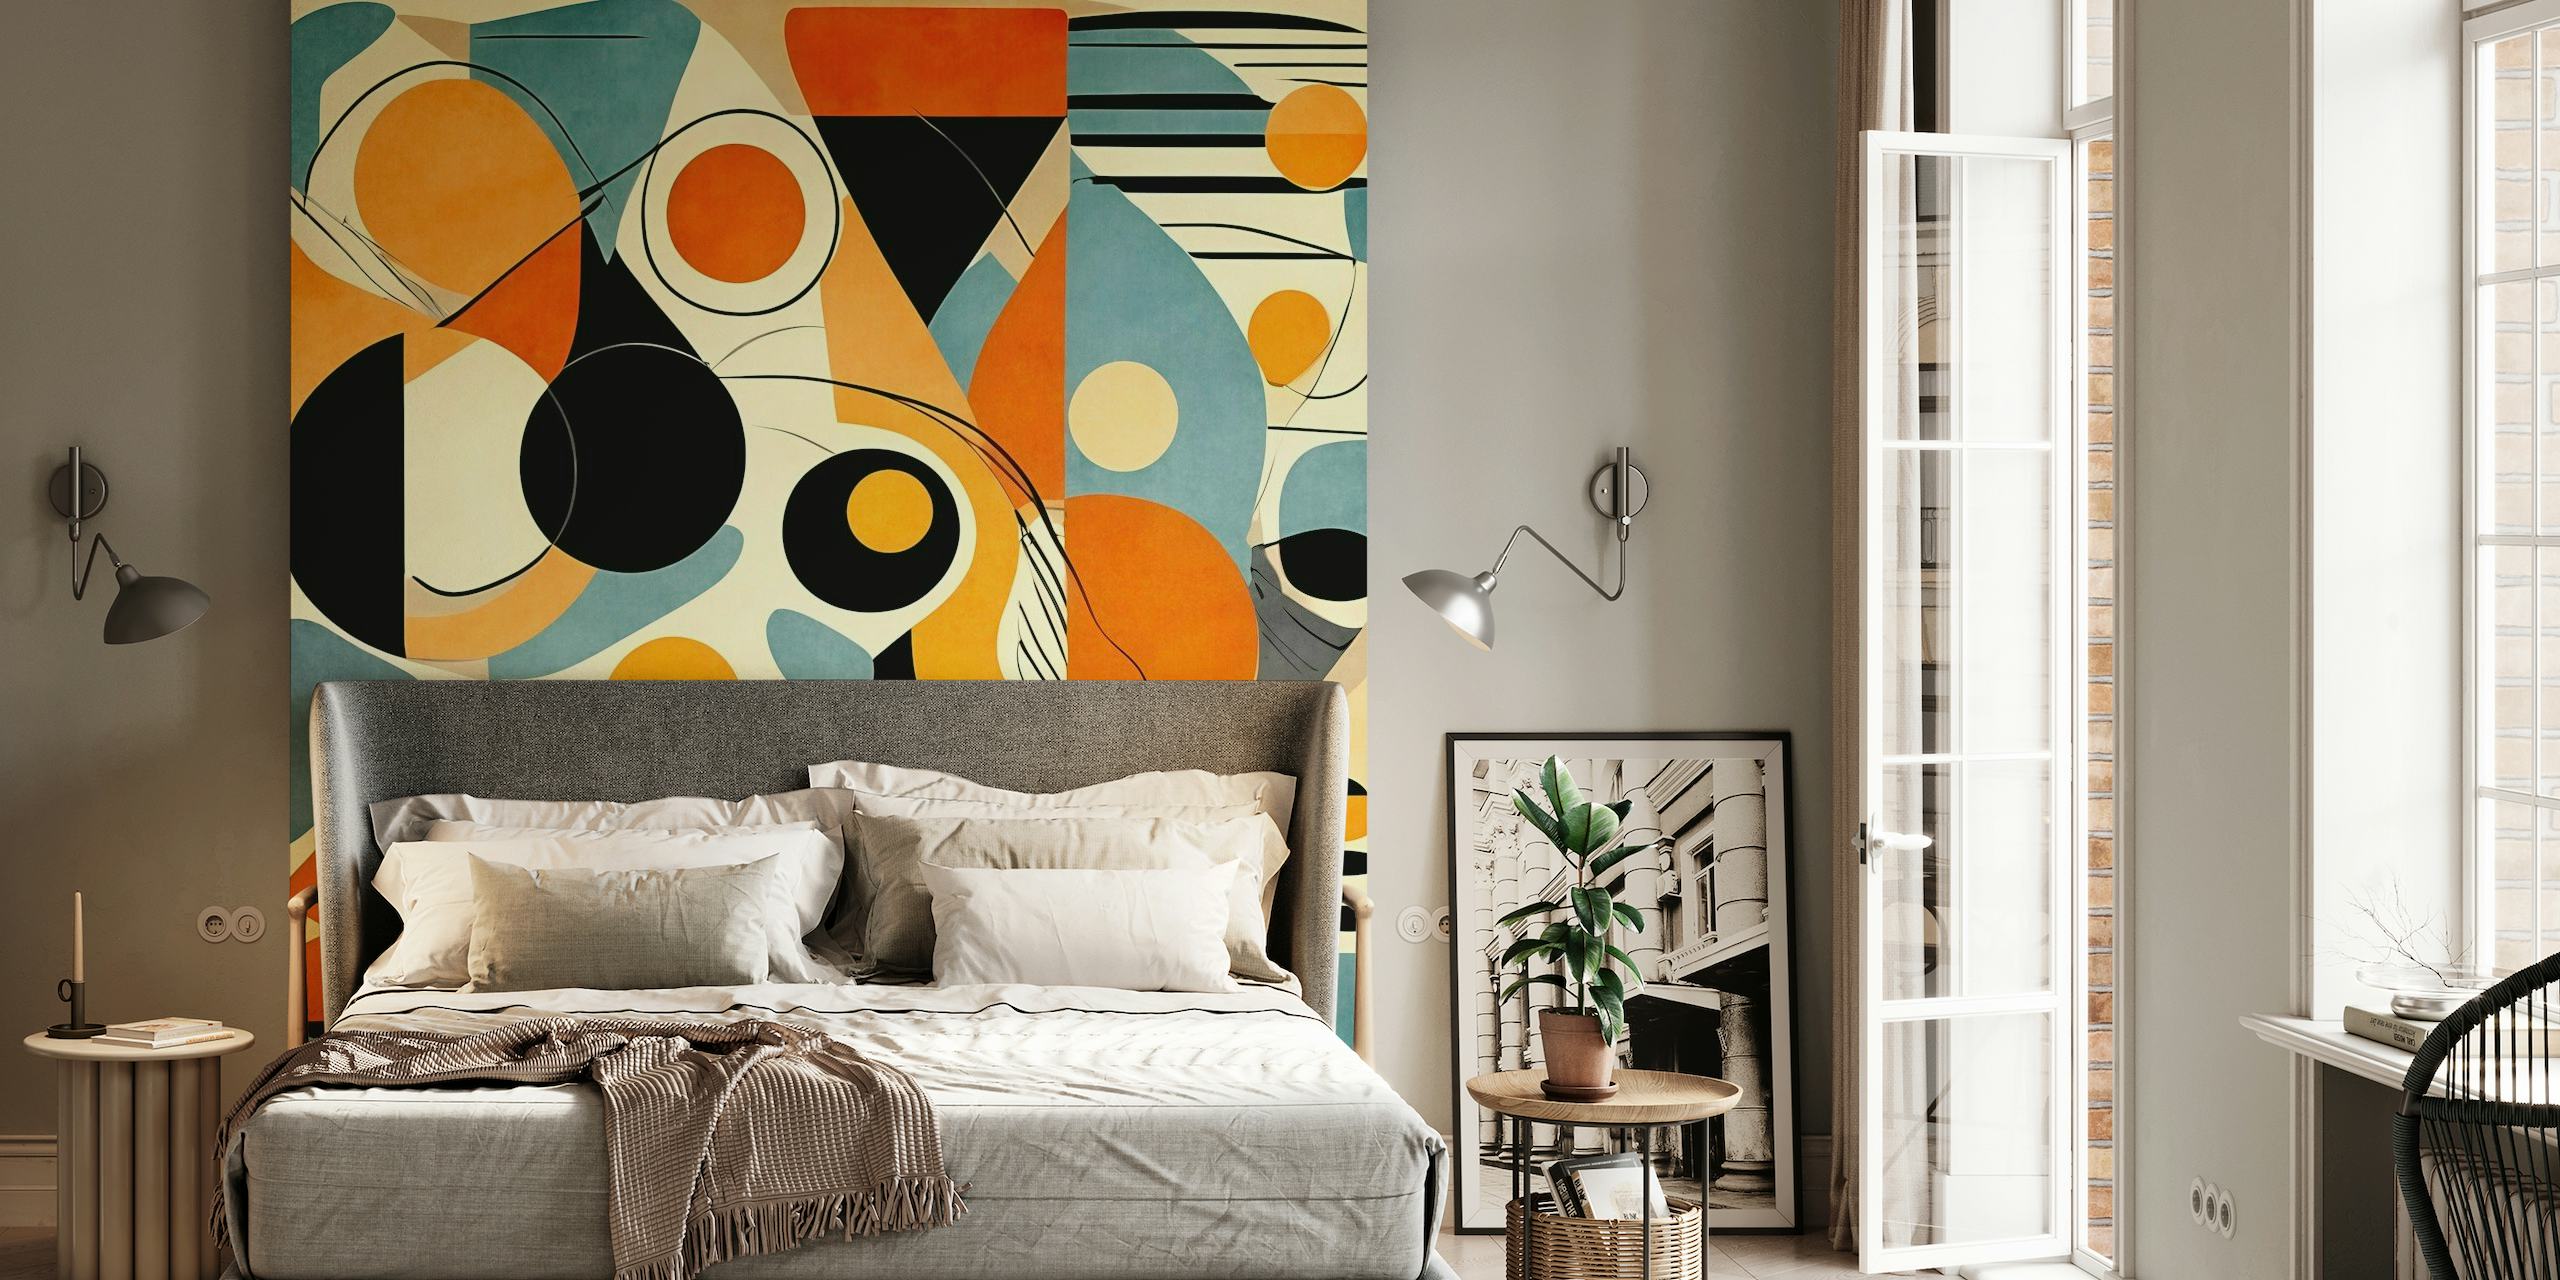 Abstrakt geometrisk tapet med en blandning av orange, blå, svart och krämfärger